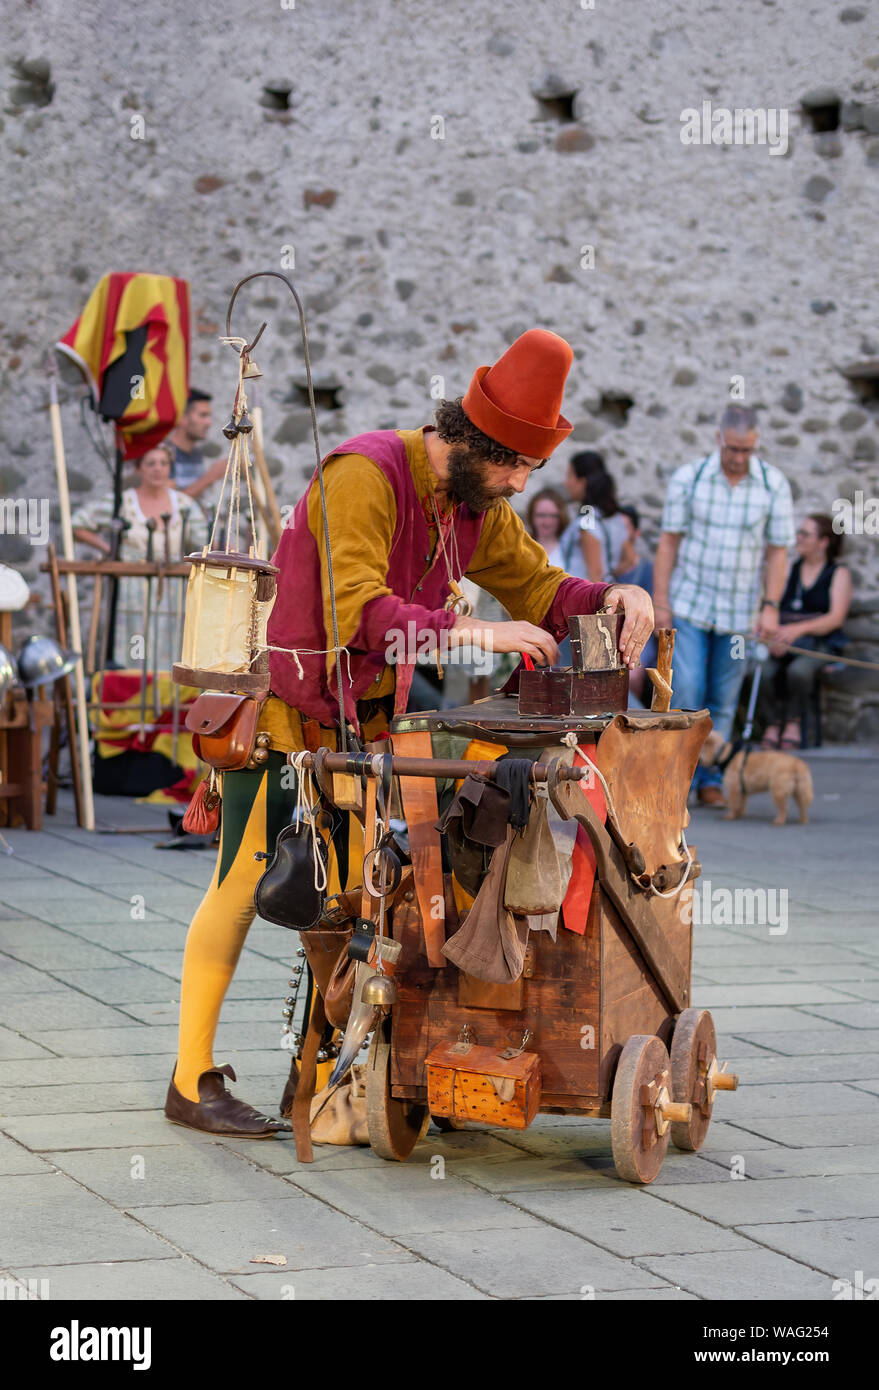 FILETTO, Italia - 11 agosto 2019: un buffone mago cerca per qualche elemento nella sua casella di trucchi. Villaggio annuale festival in un autentico borgo medievale Foto Stock